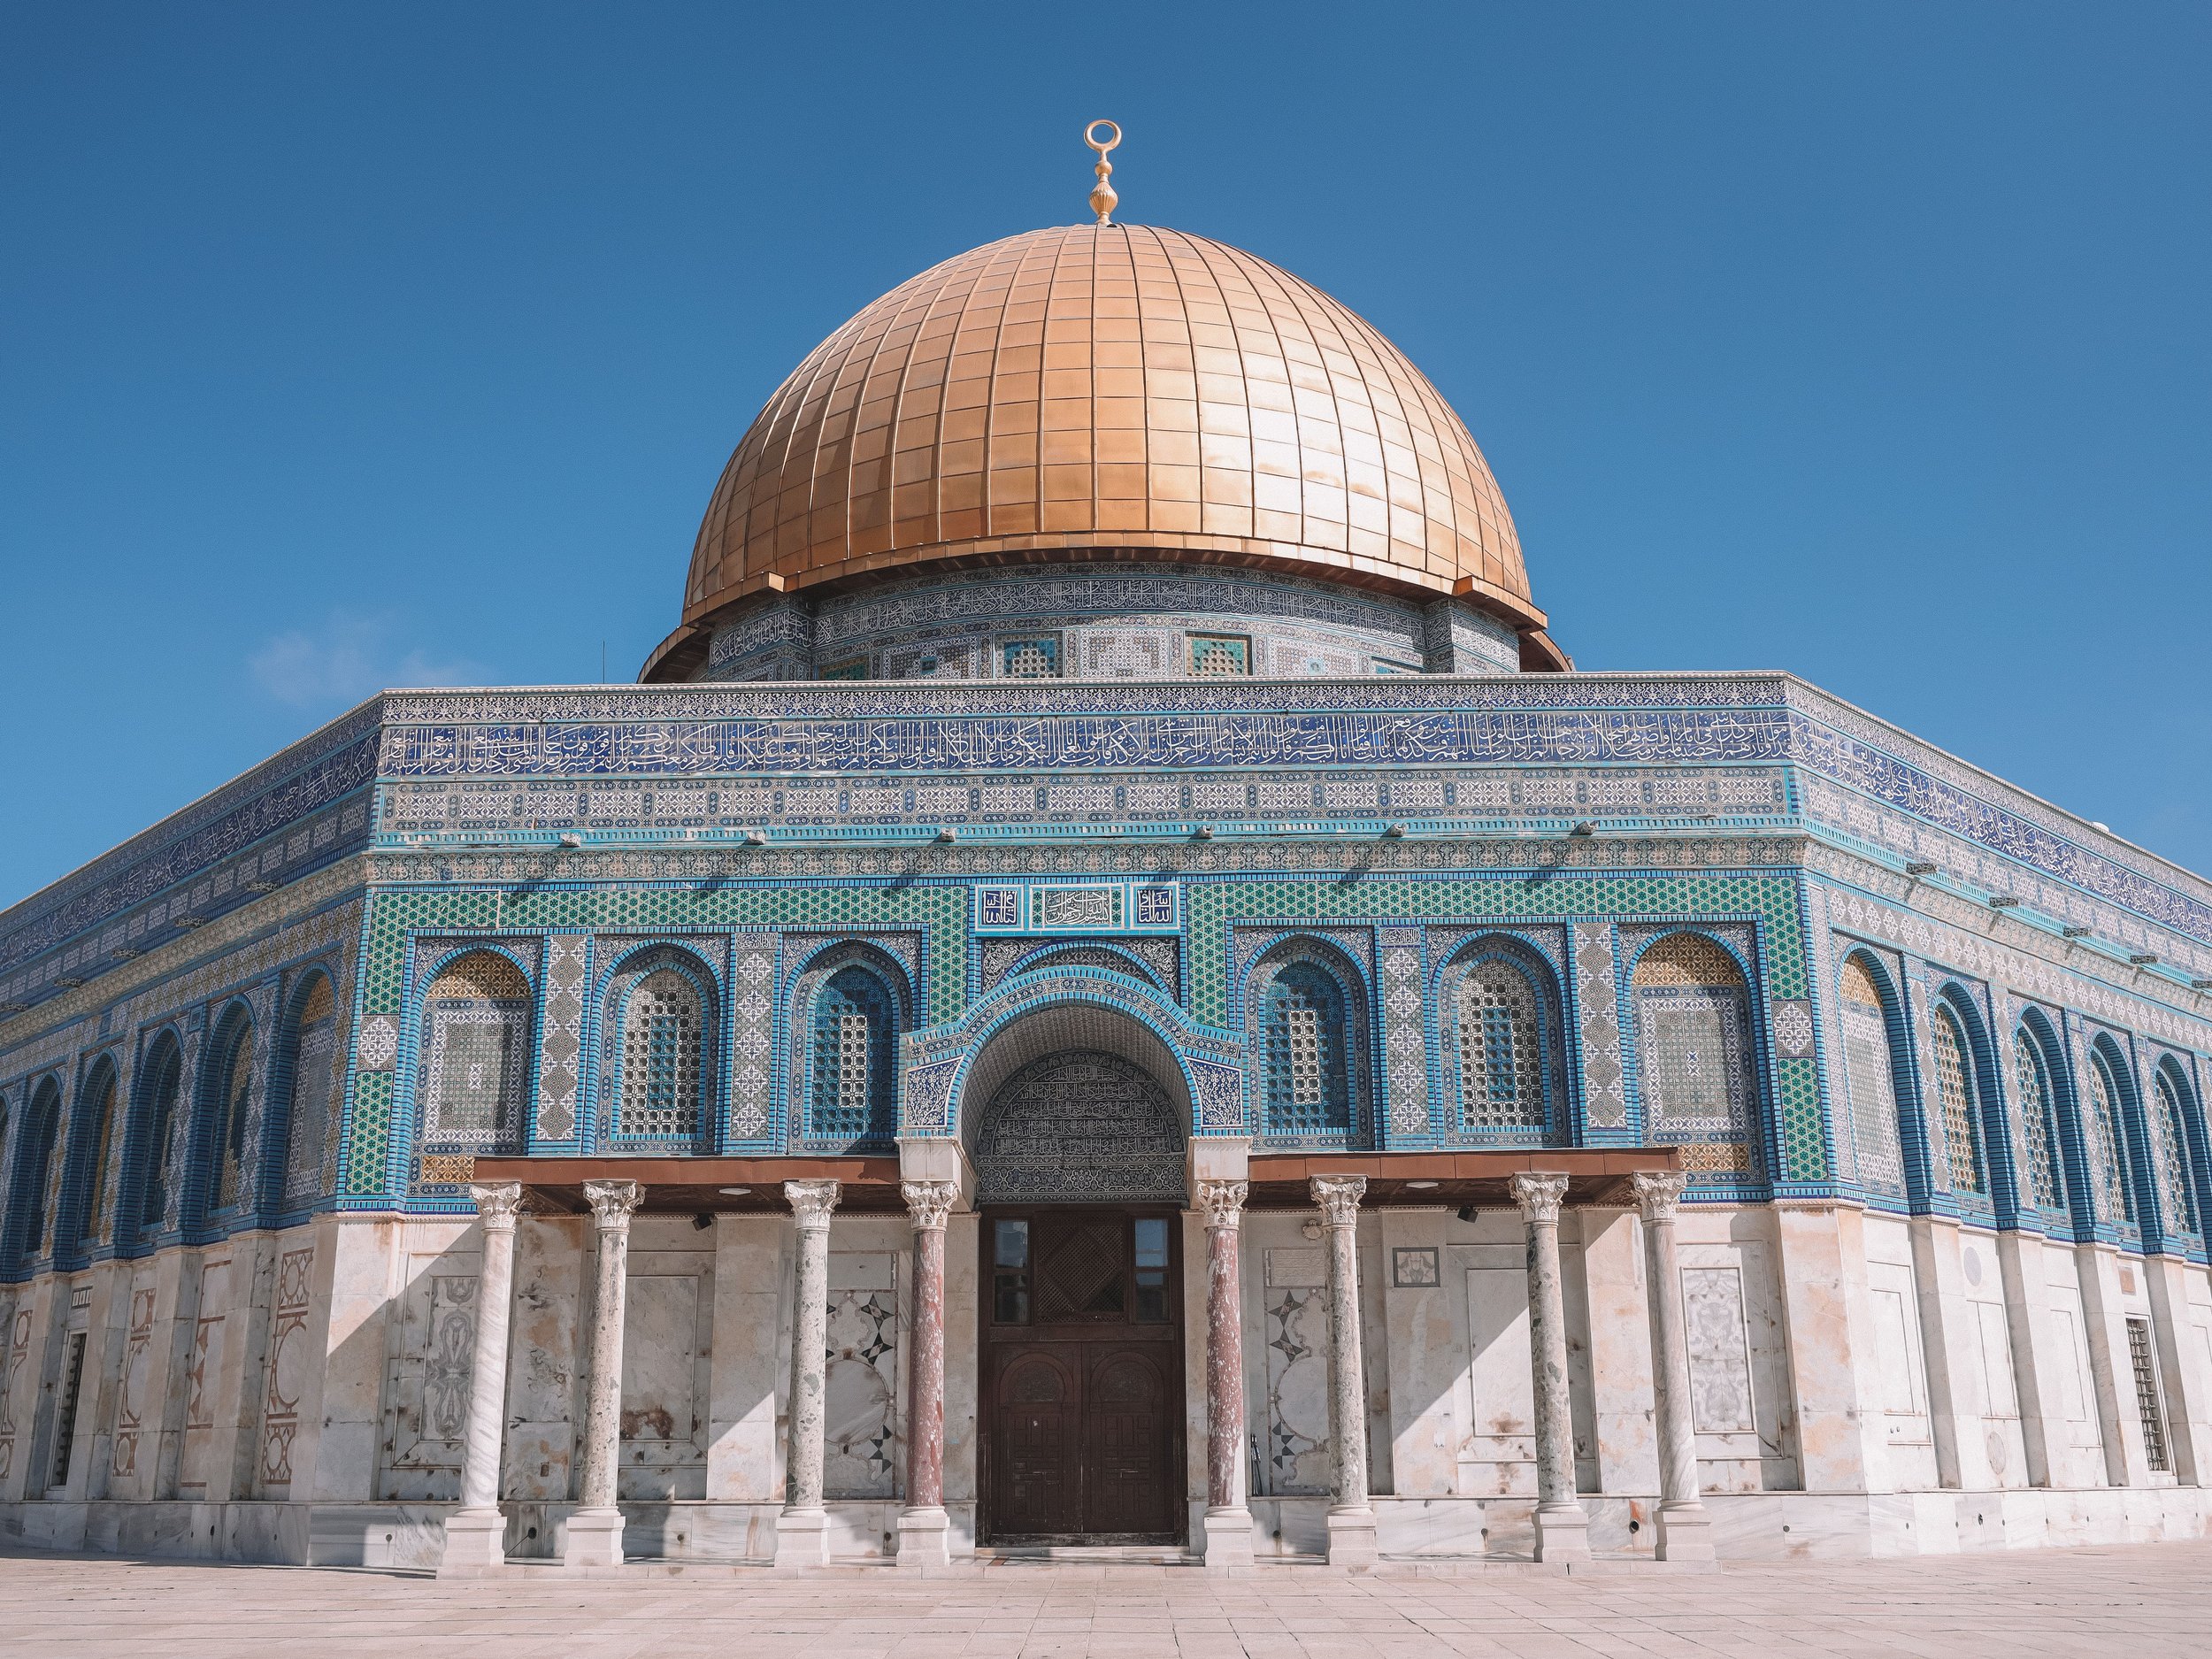 Le dôme dorée et ses mosaïques bleues - Vieille Ville - Jérusalem - Israël